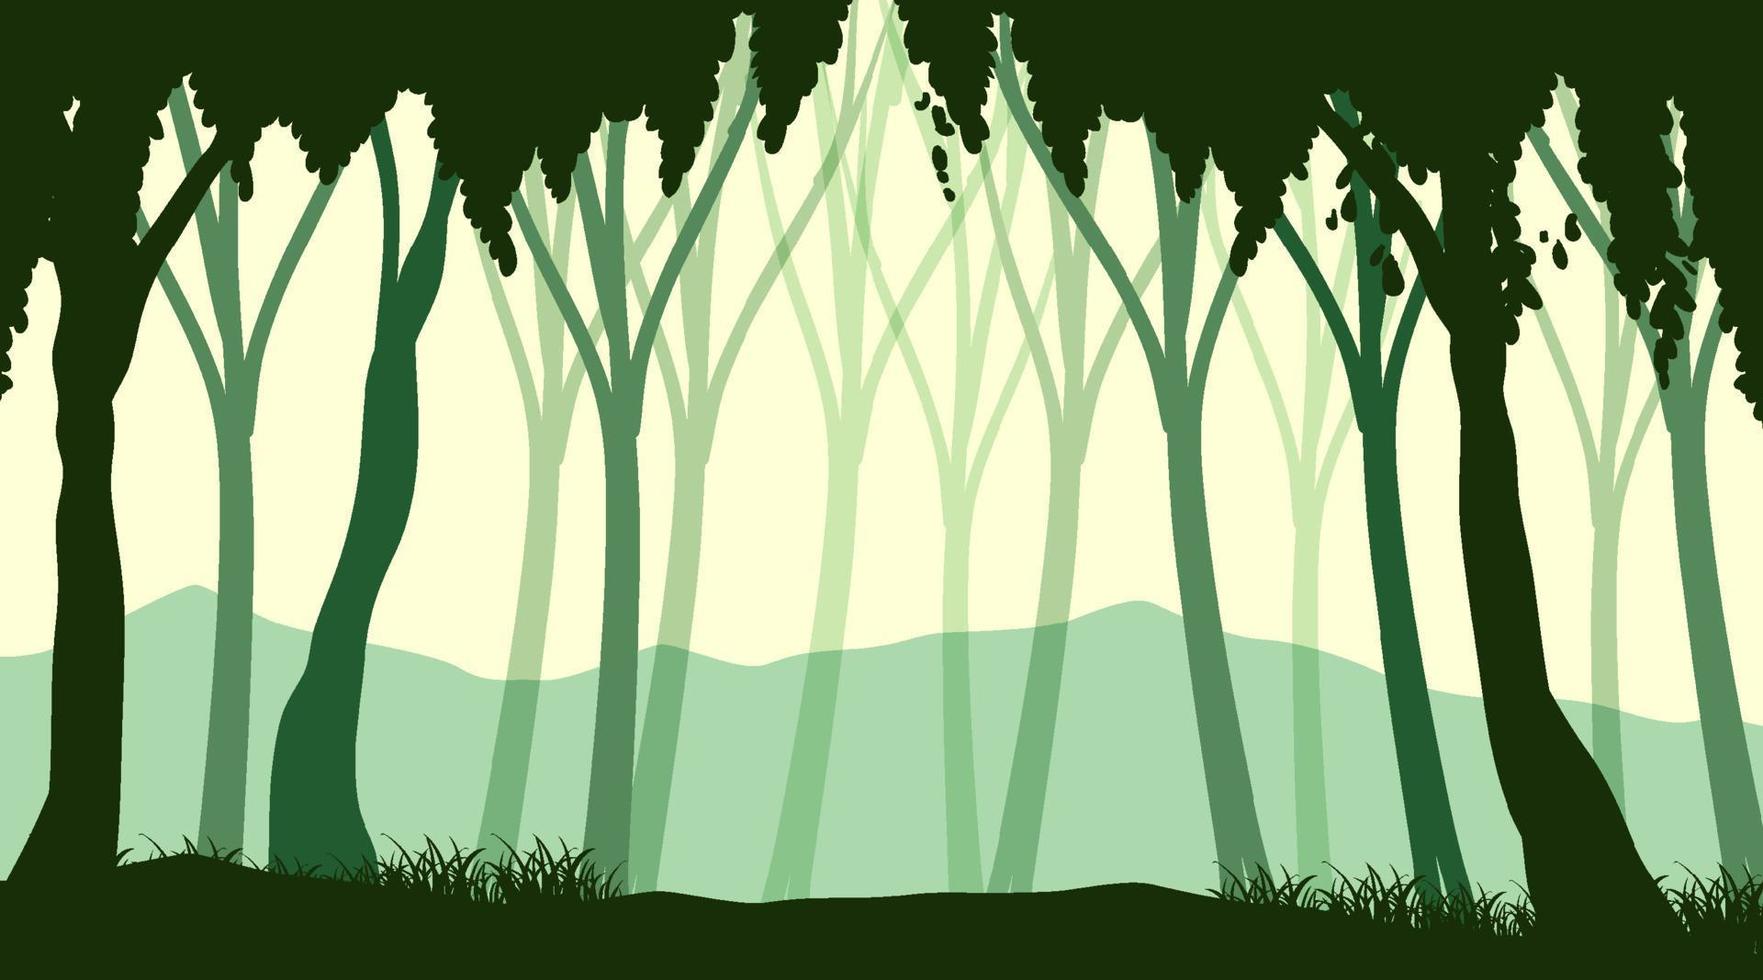 siluett skuggan av skog scen vektor